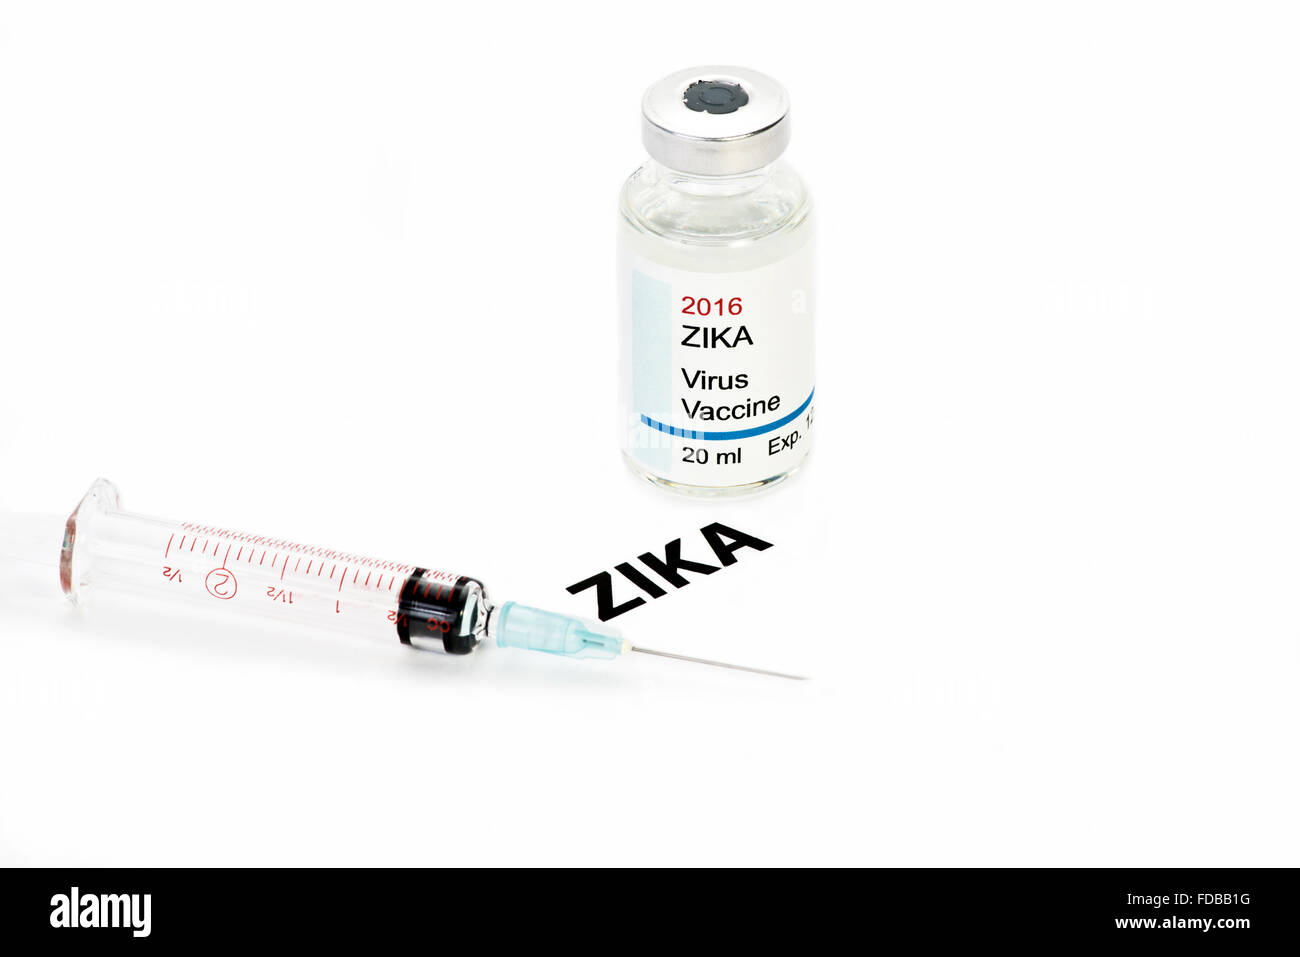 Zika ipotetico virus vaccino. Etichetta è ovviamente fittizio. Foto Stock